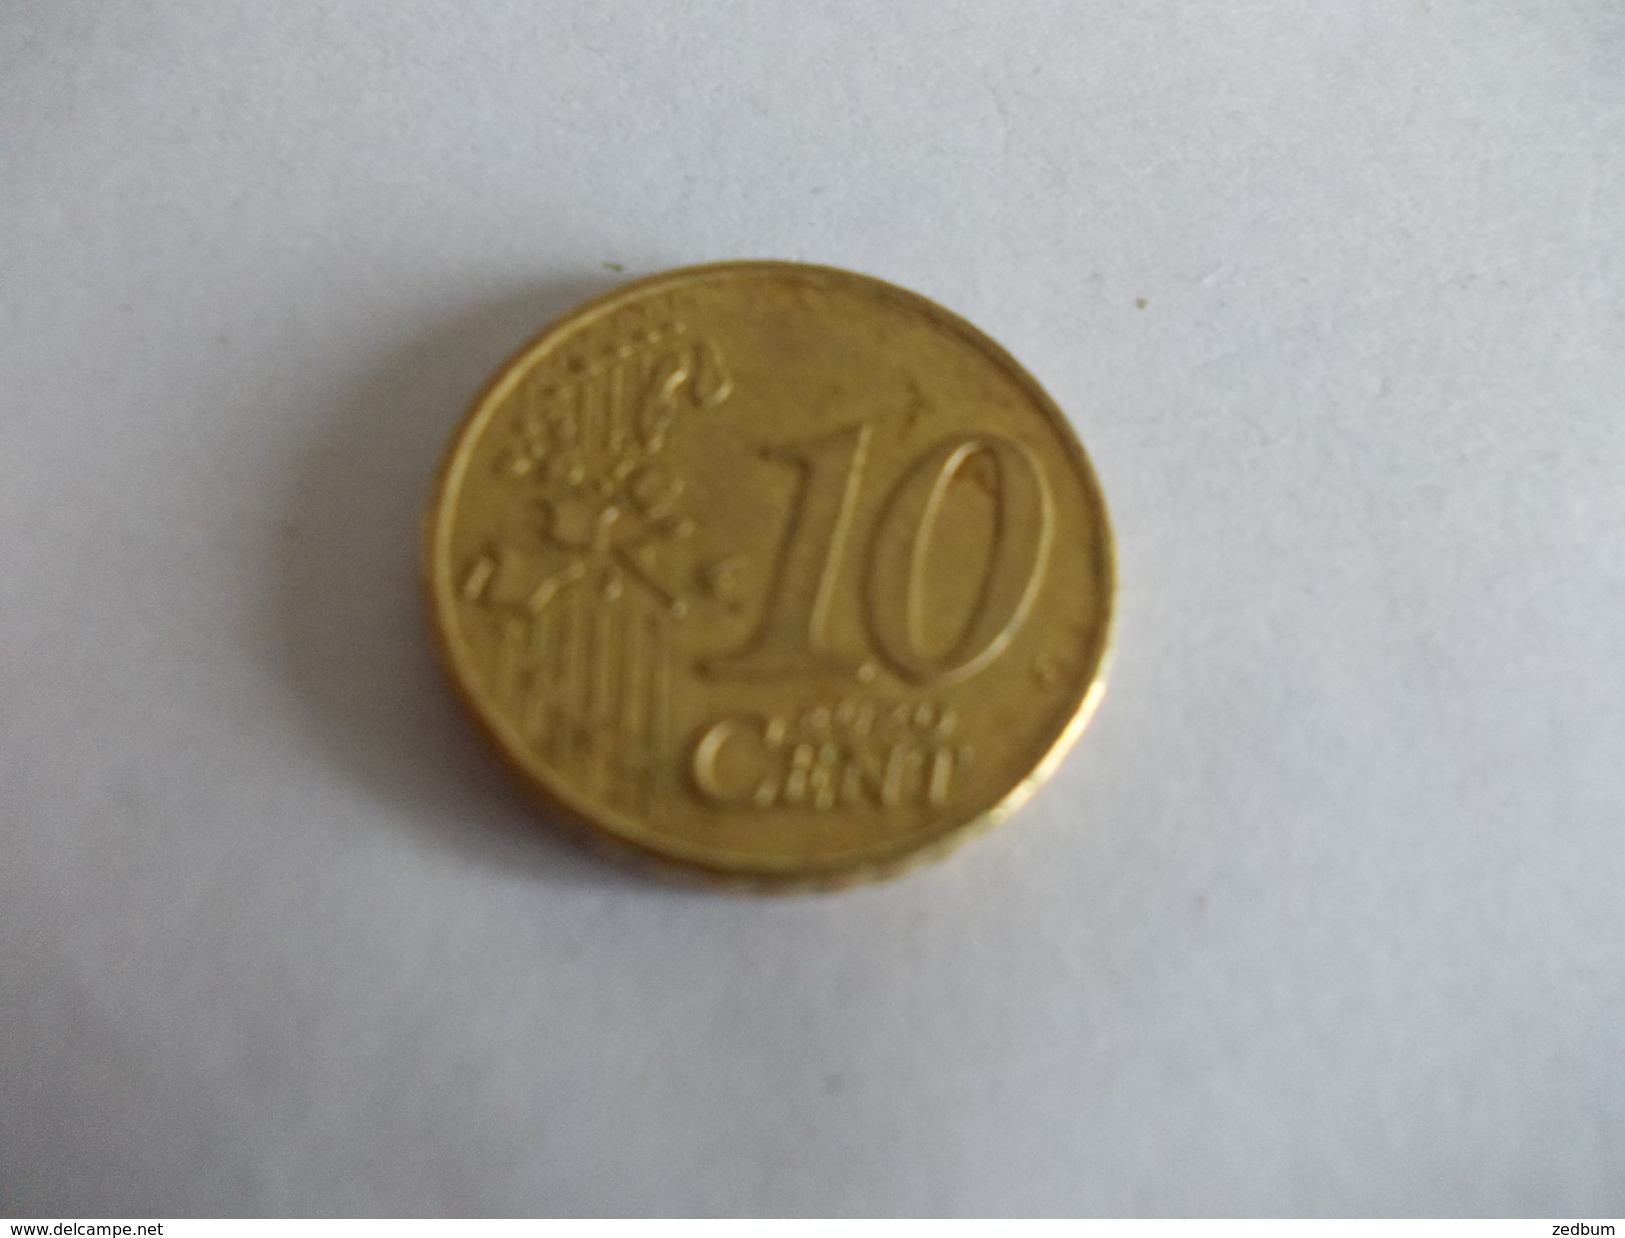 Monnaie Pièce De 10 Centimes D' Euro De Pays Bas Année 2001 Valeur Argus 1 &euro; - Netherlands